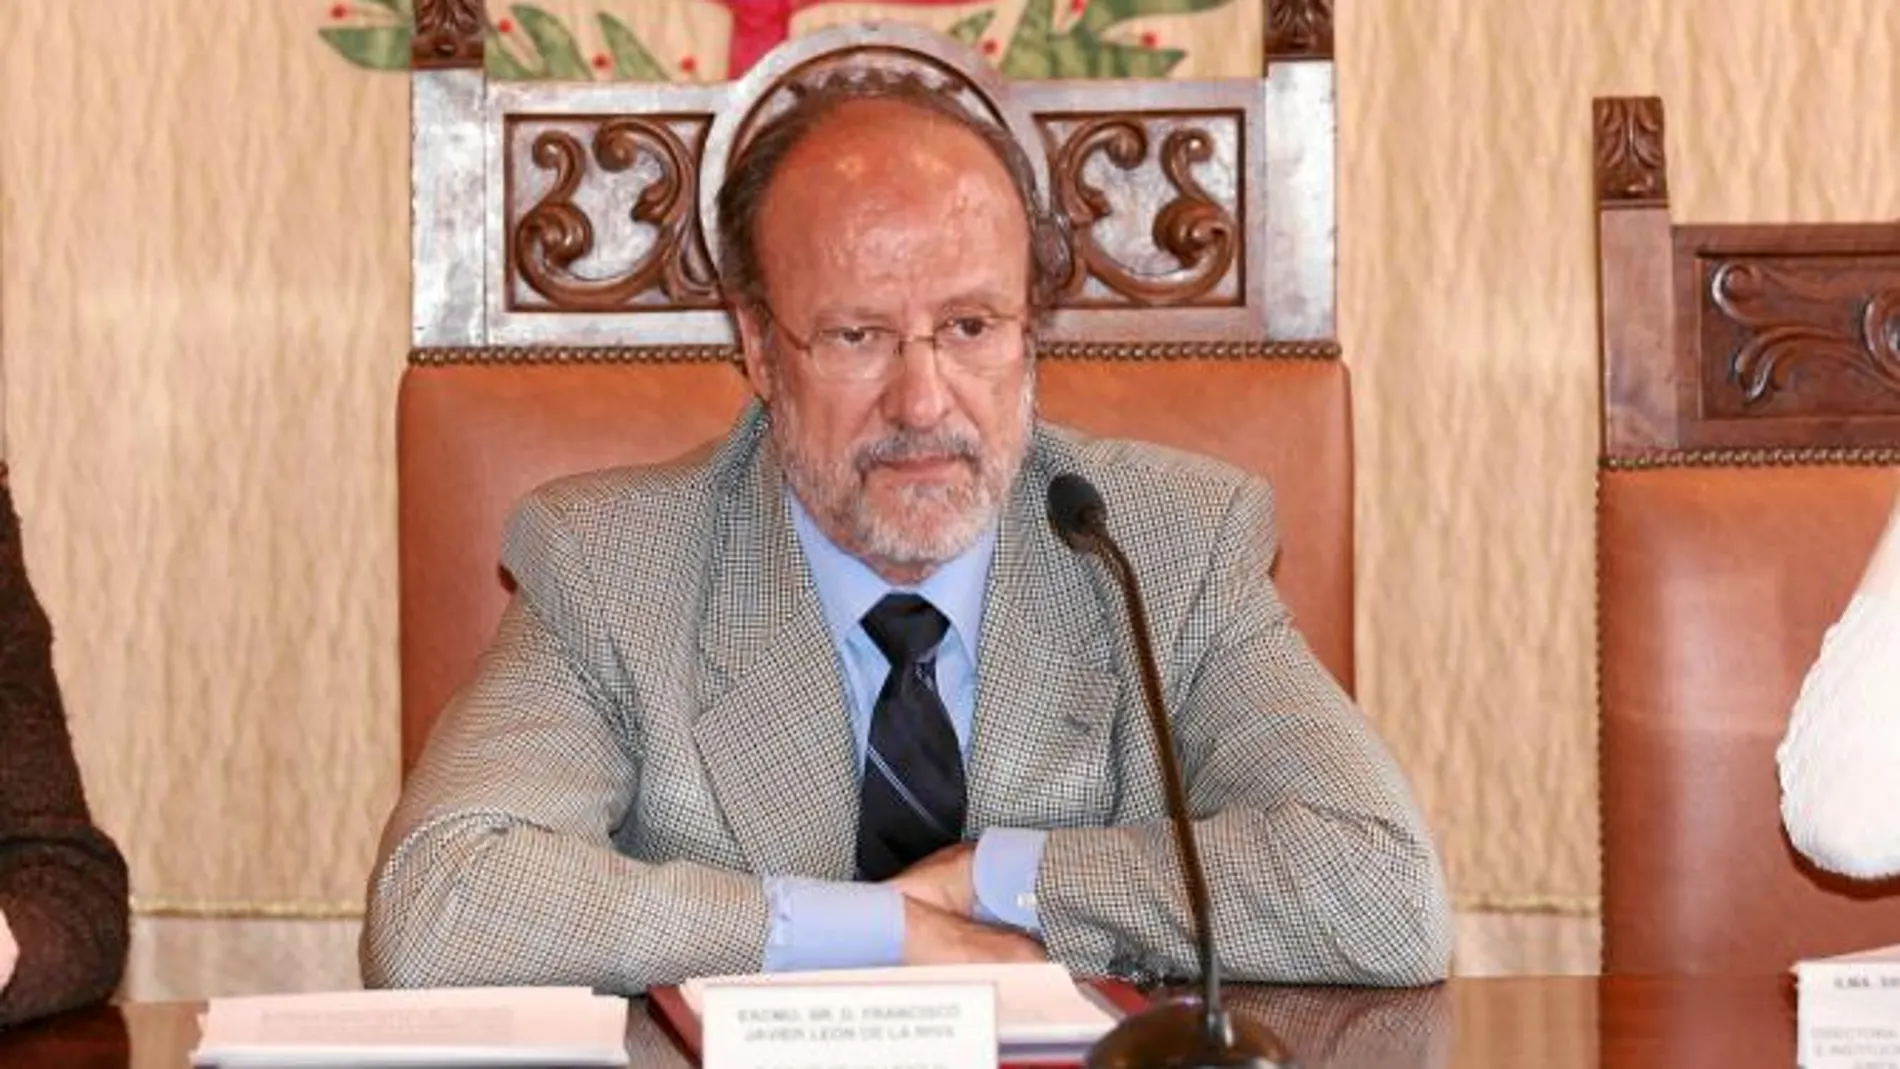 El ex alcalde de Valladolid, Javier León de la Riva